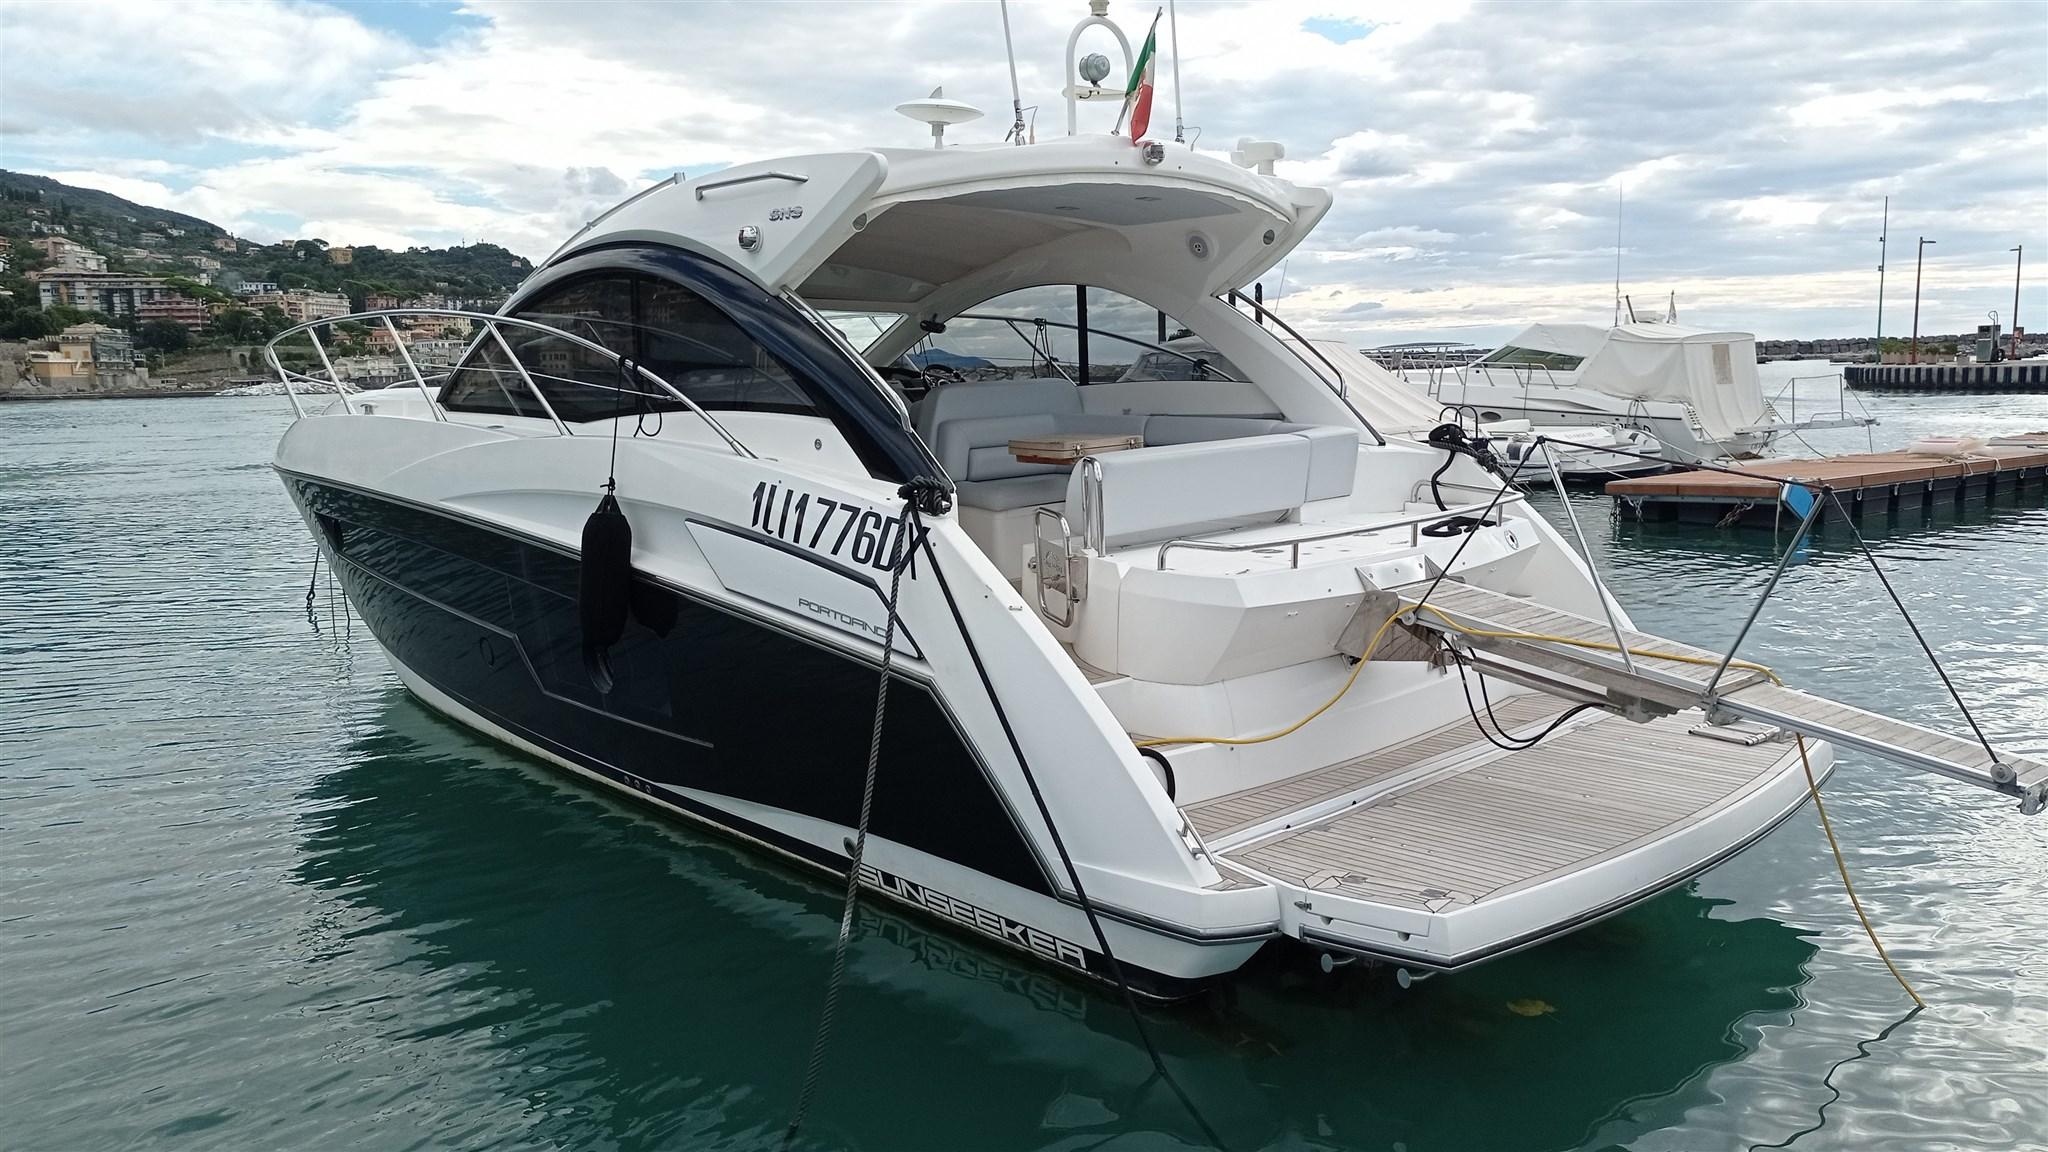 SUNSEEKER Portofino 40 essai bateau à moteur avec Maxiboat TV 